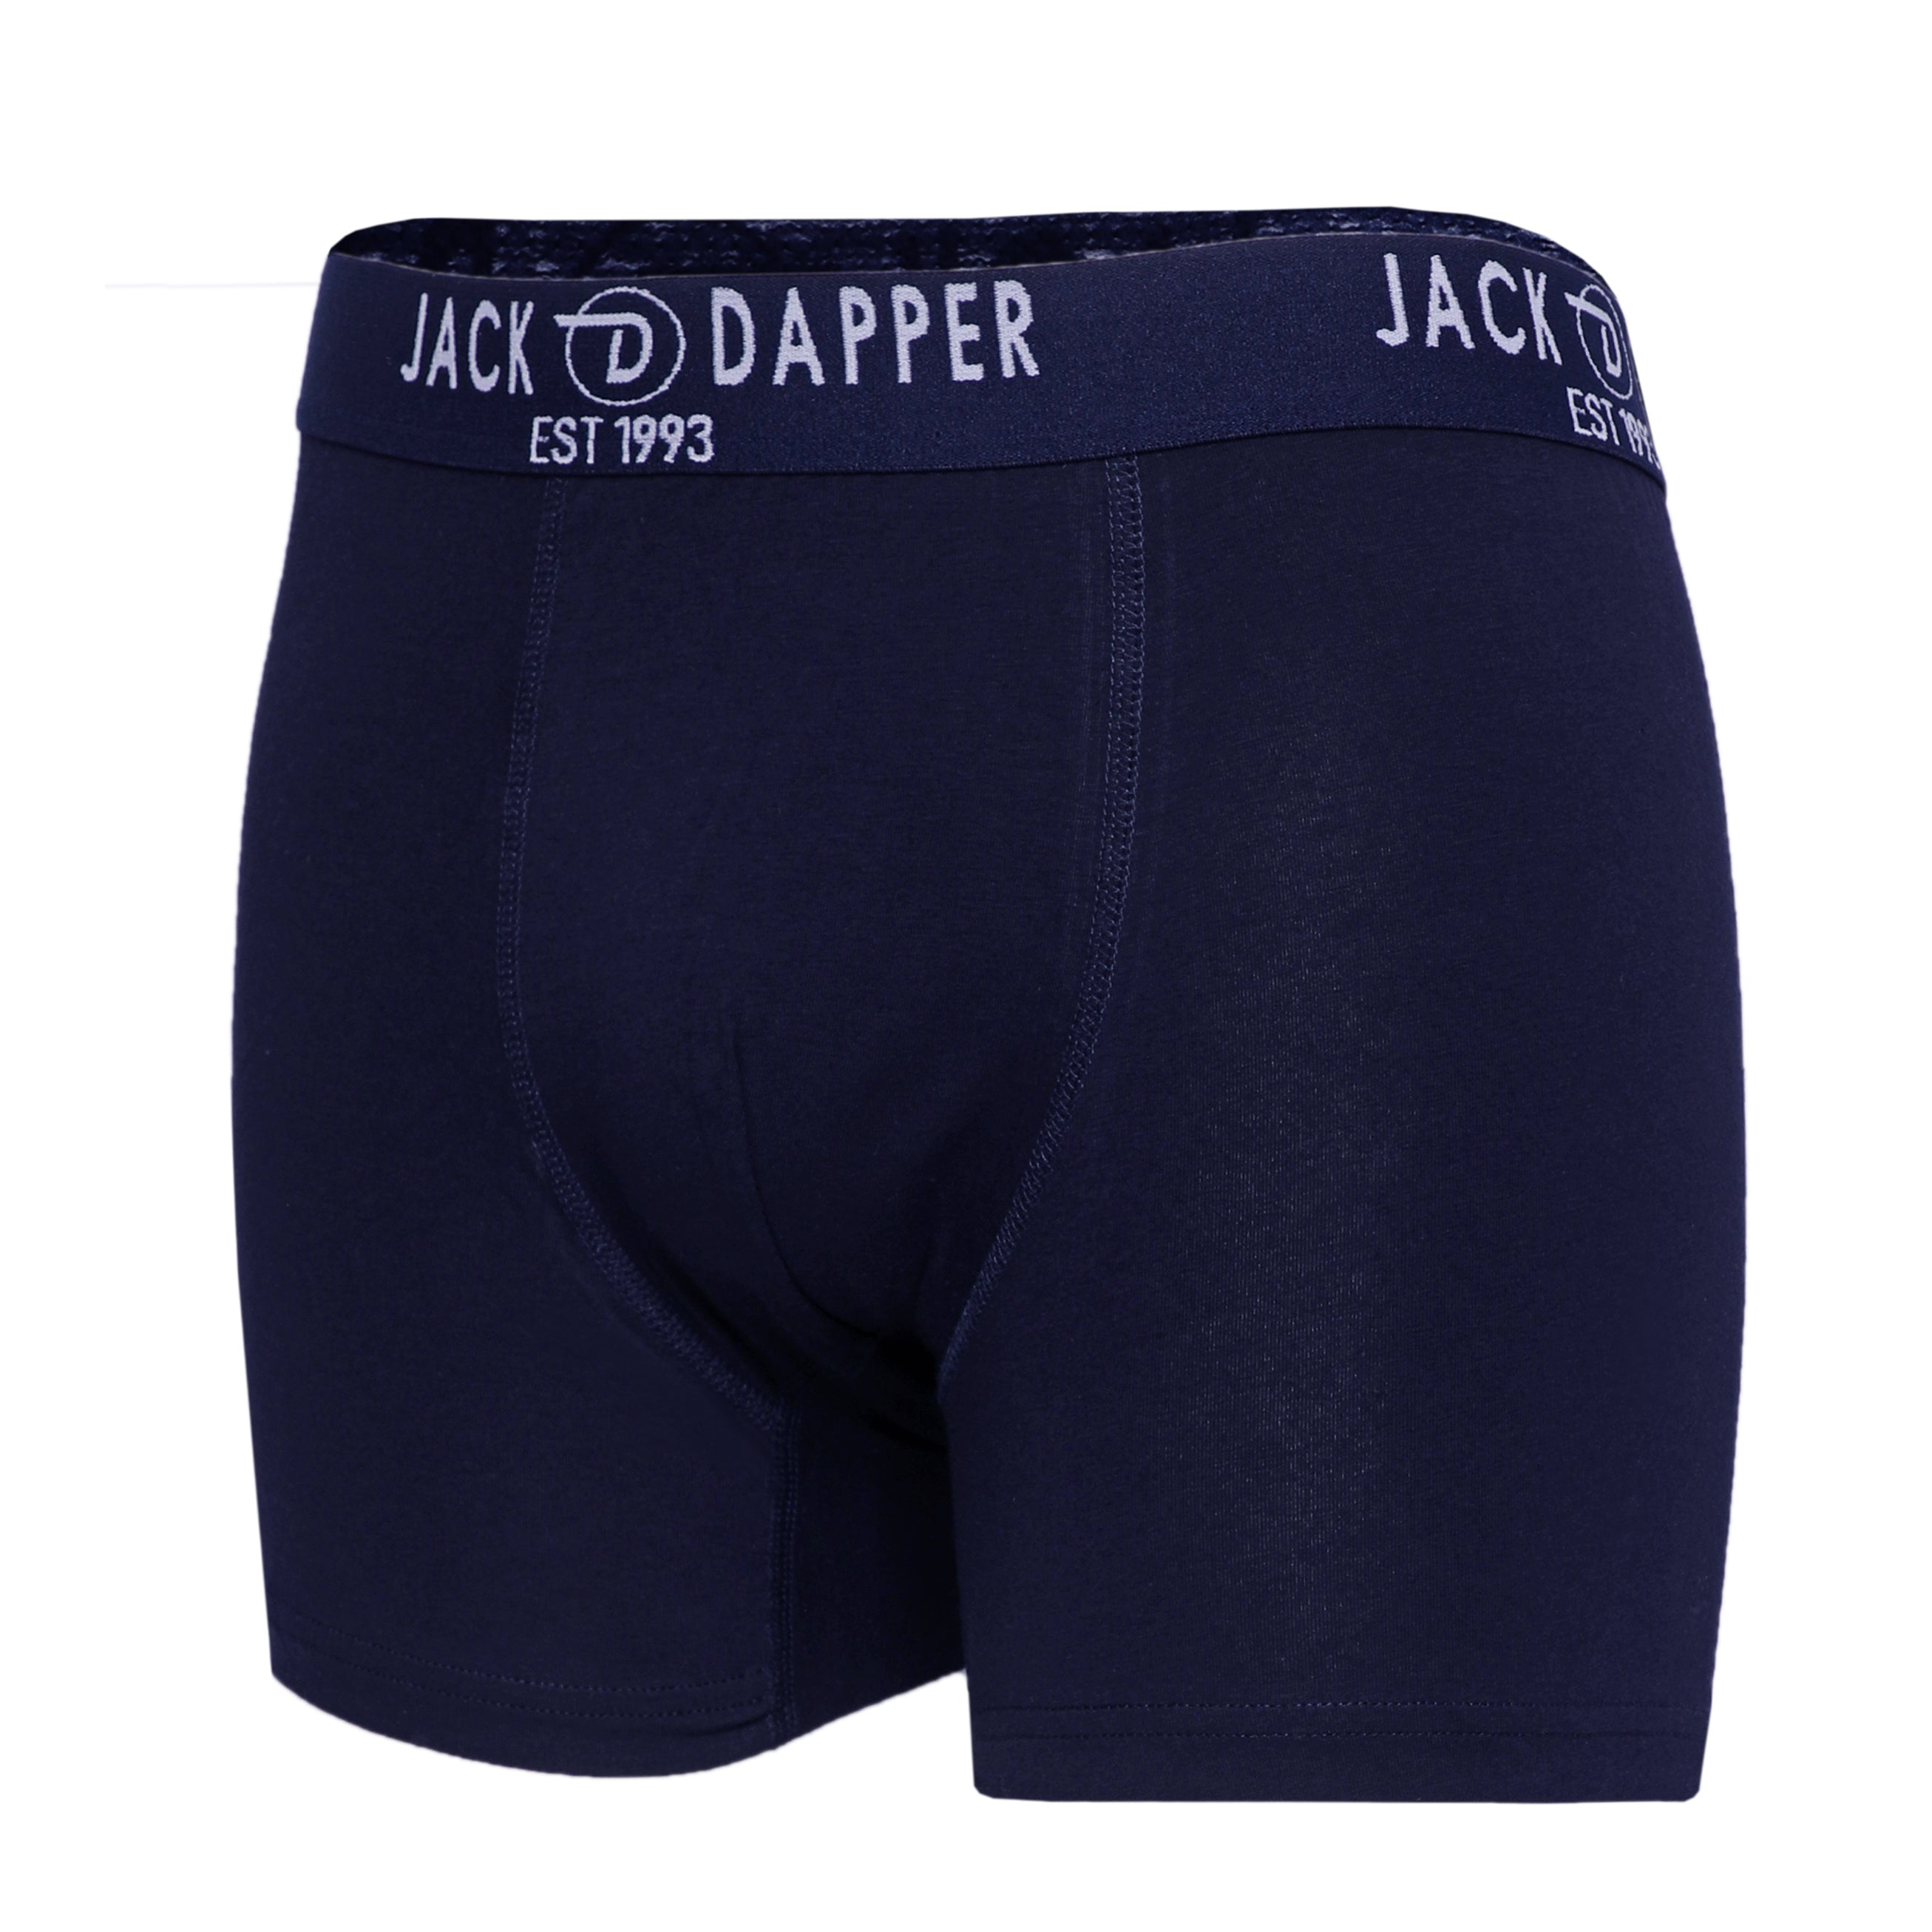 Jack Dapper Navy 2-Piece Cotton Underwear